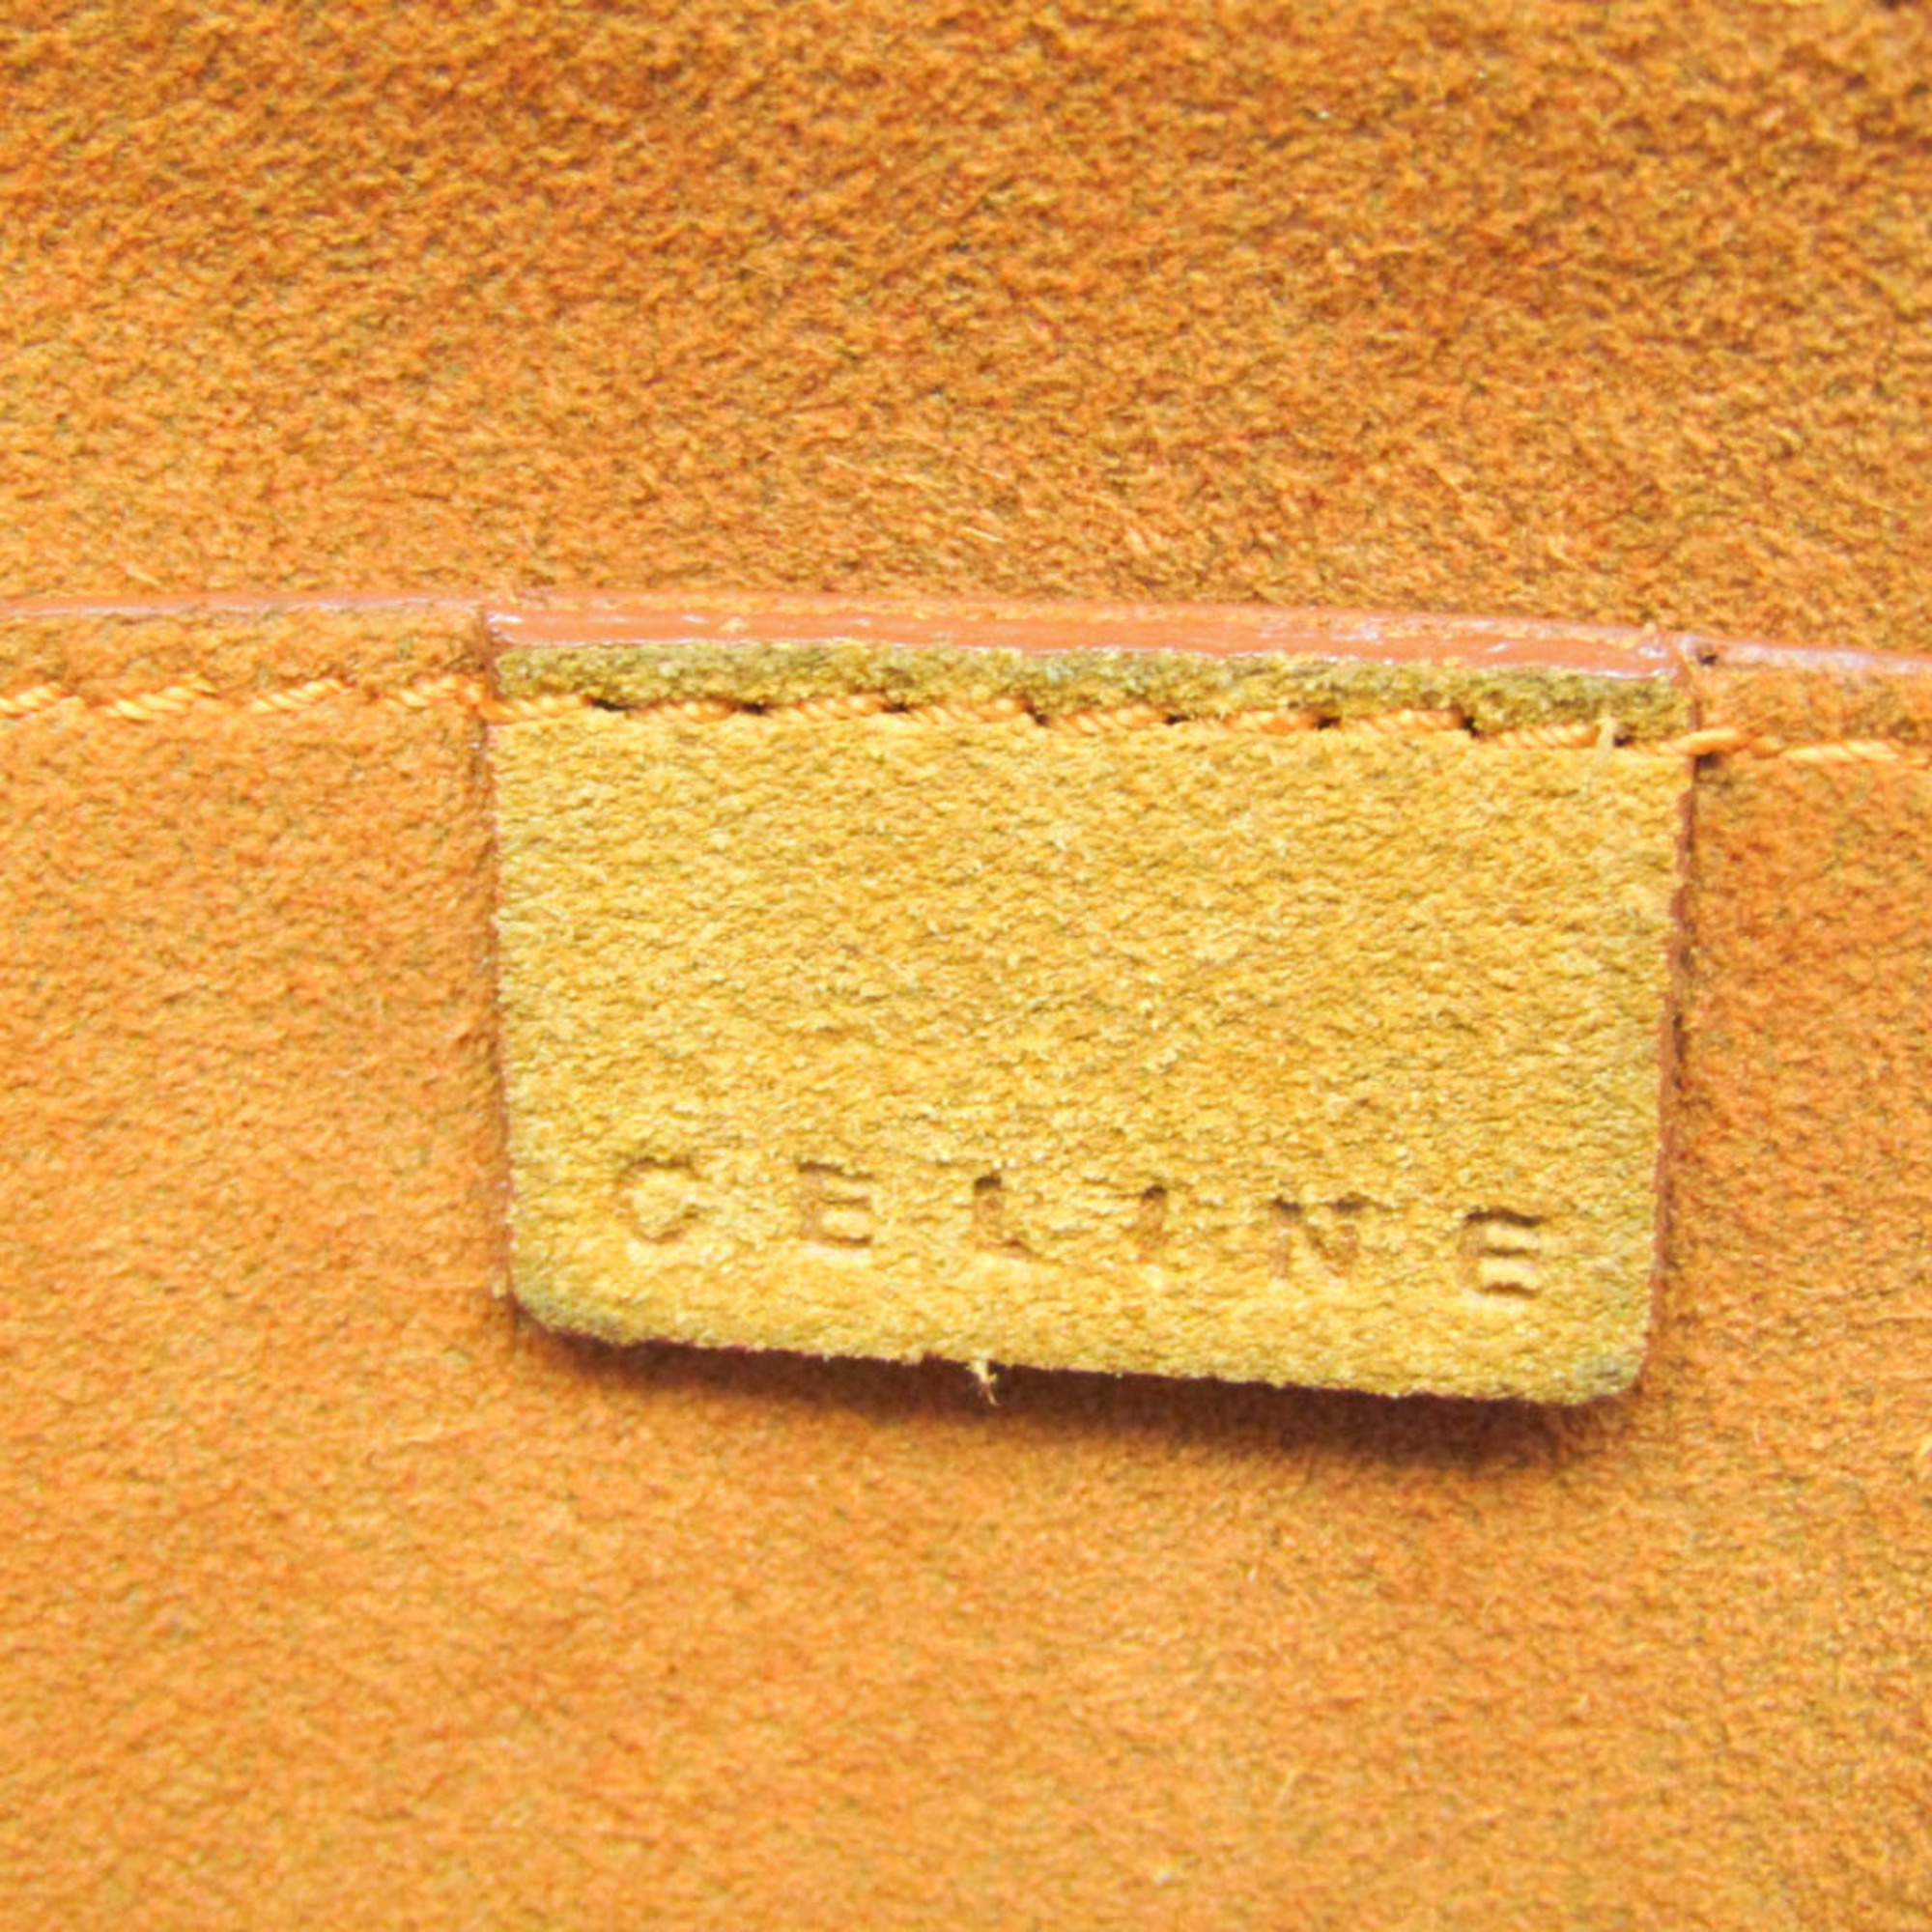 Celine Boogie Women's Suede Handbag Orange